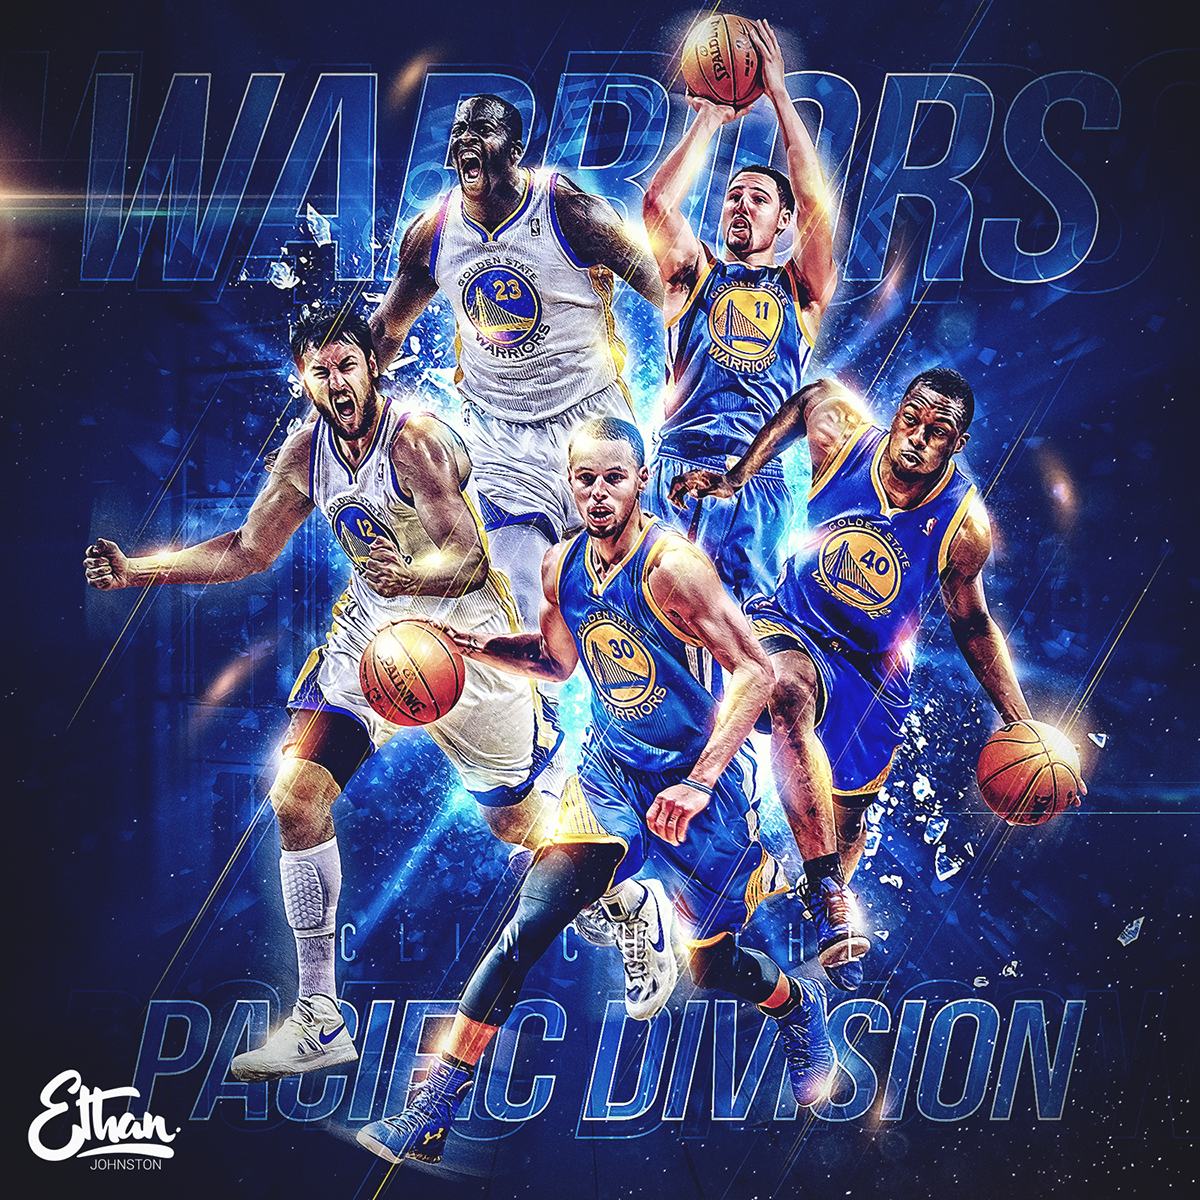 sport warriors stephen curry James Harden NBA mvp Playoffs Finals basketball Russell Westbrook klay thompson LeBron James Chris Paul rockets Ps25Under25